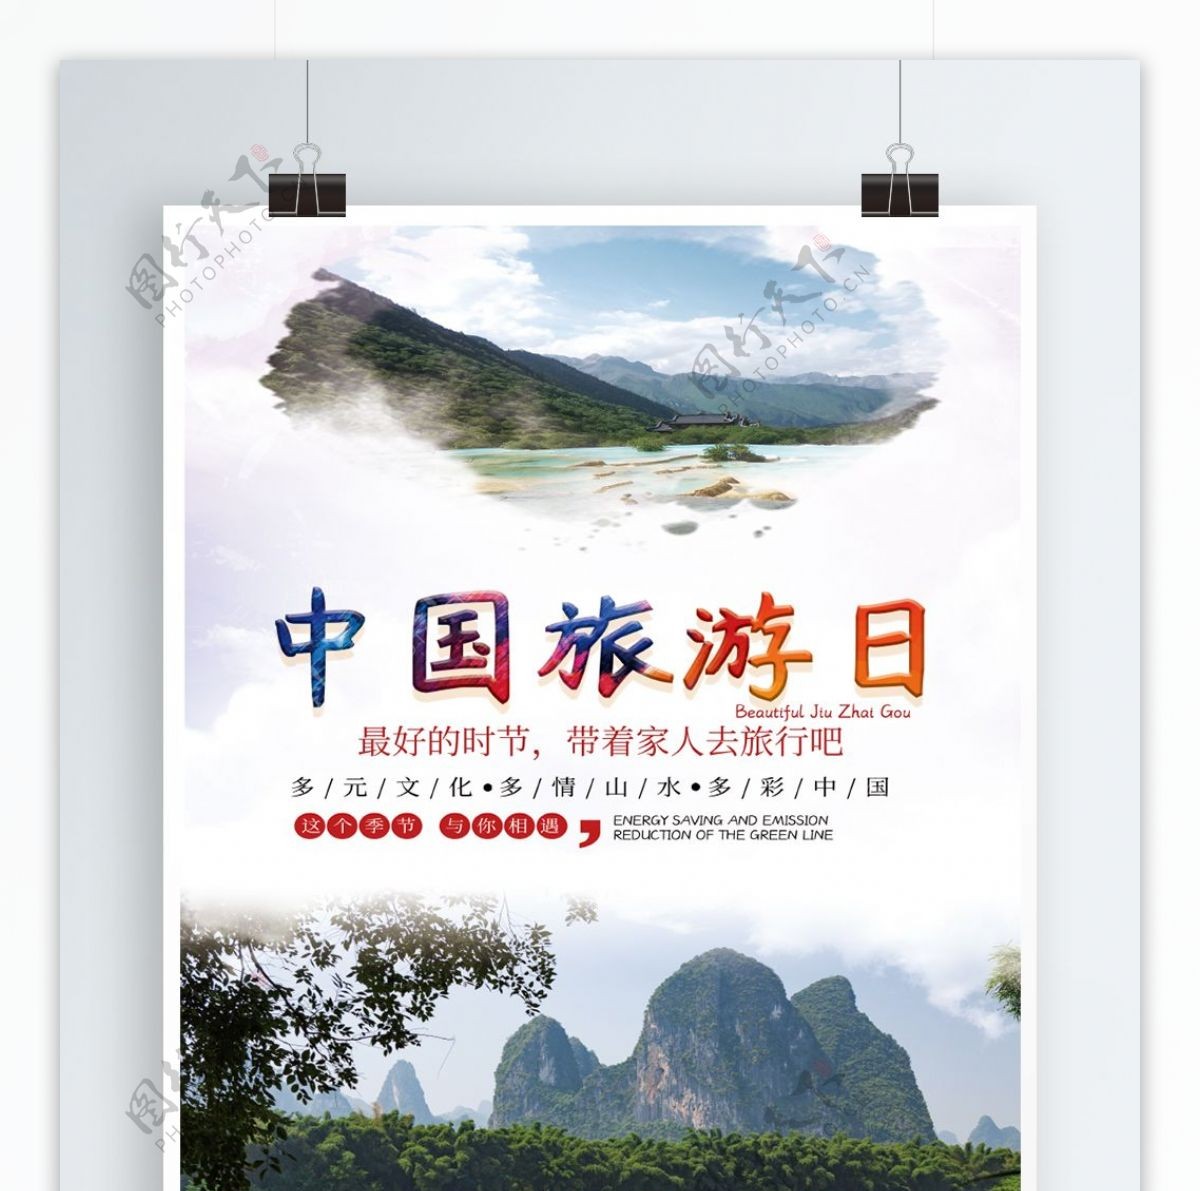 中国旅游日活动主题海报